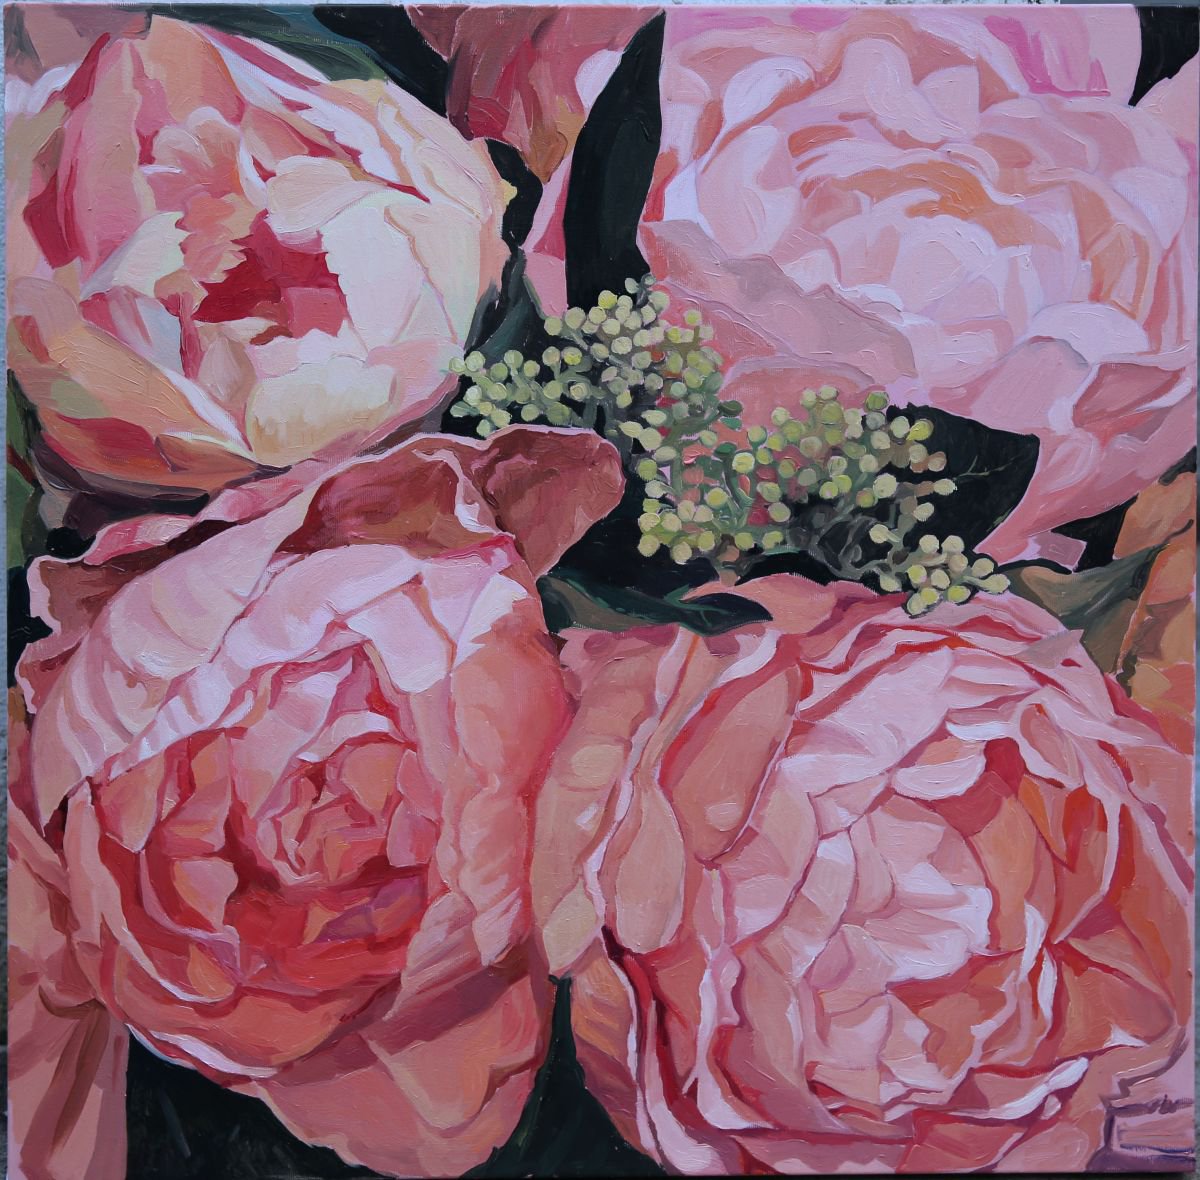 Rose rose by Ann Guse